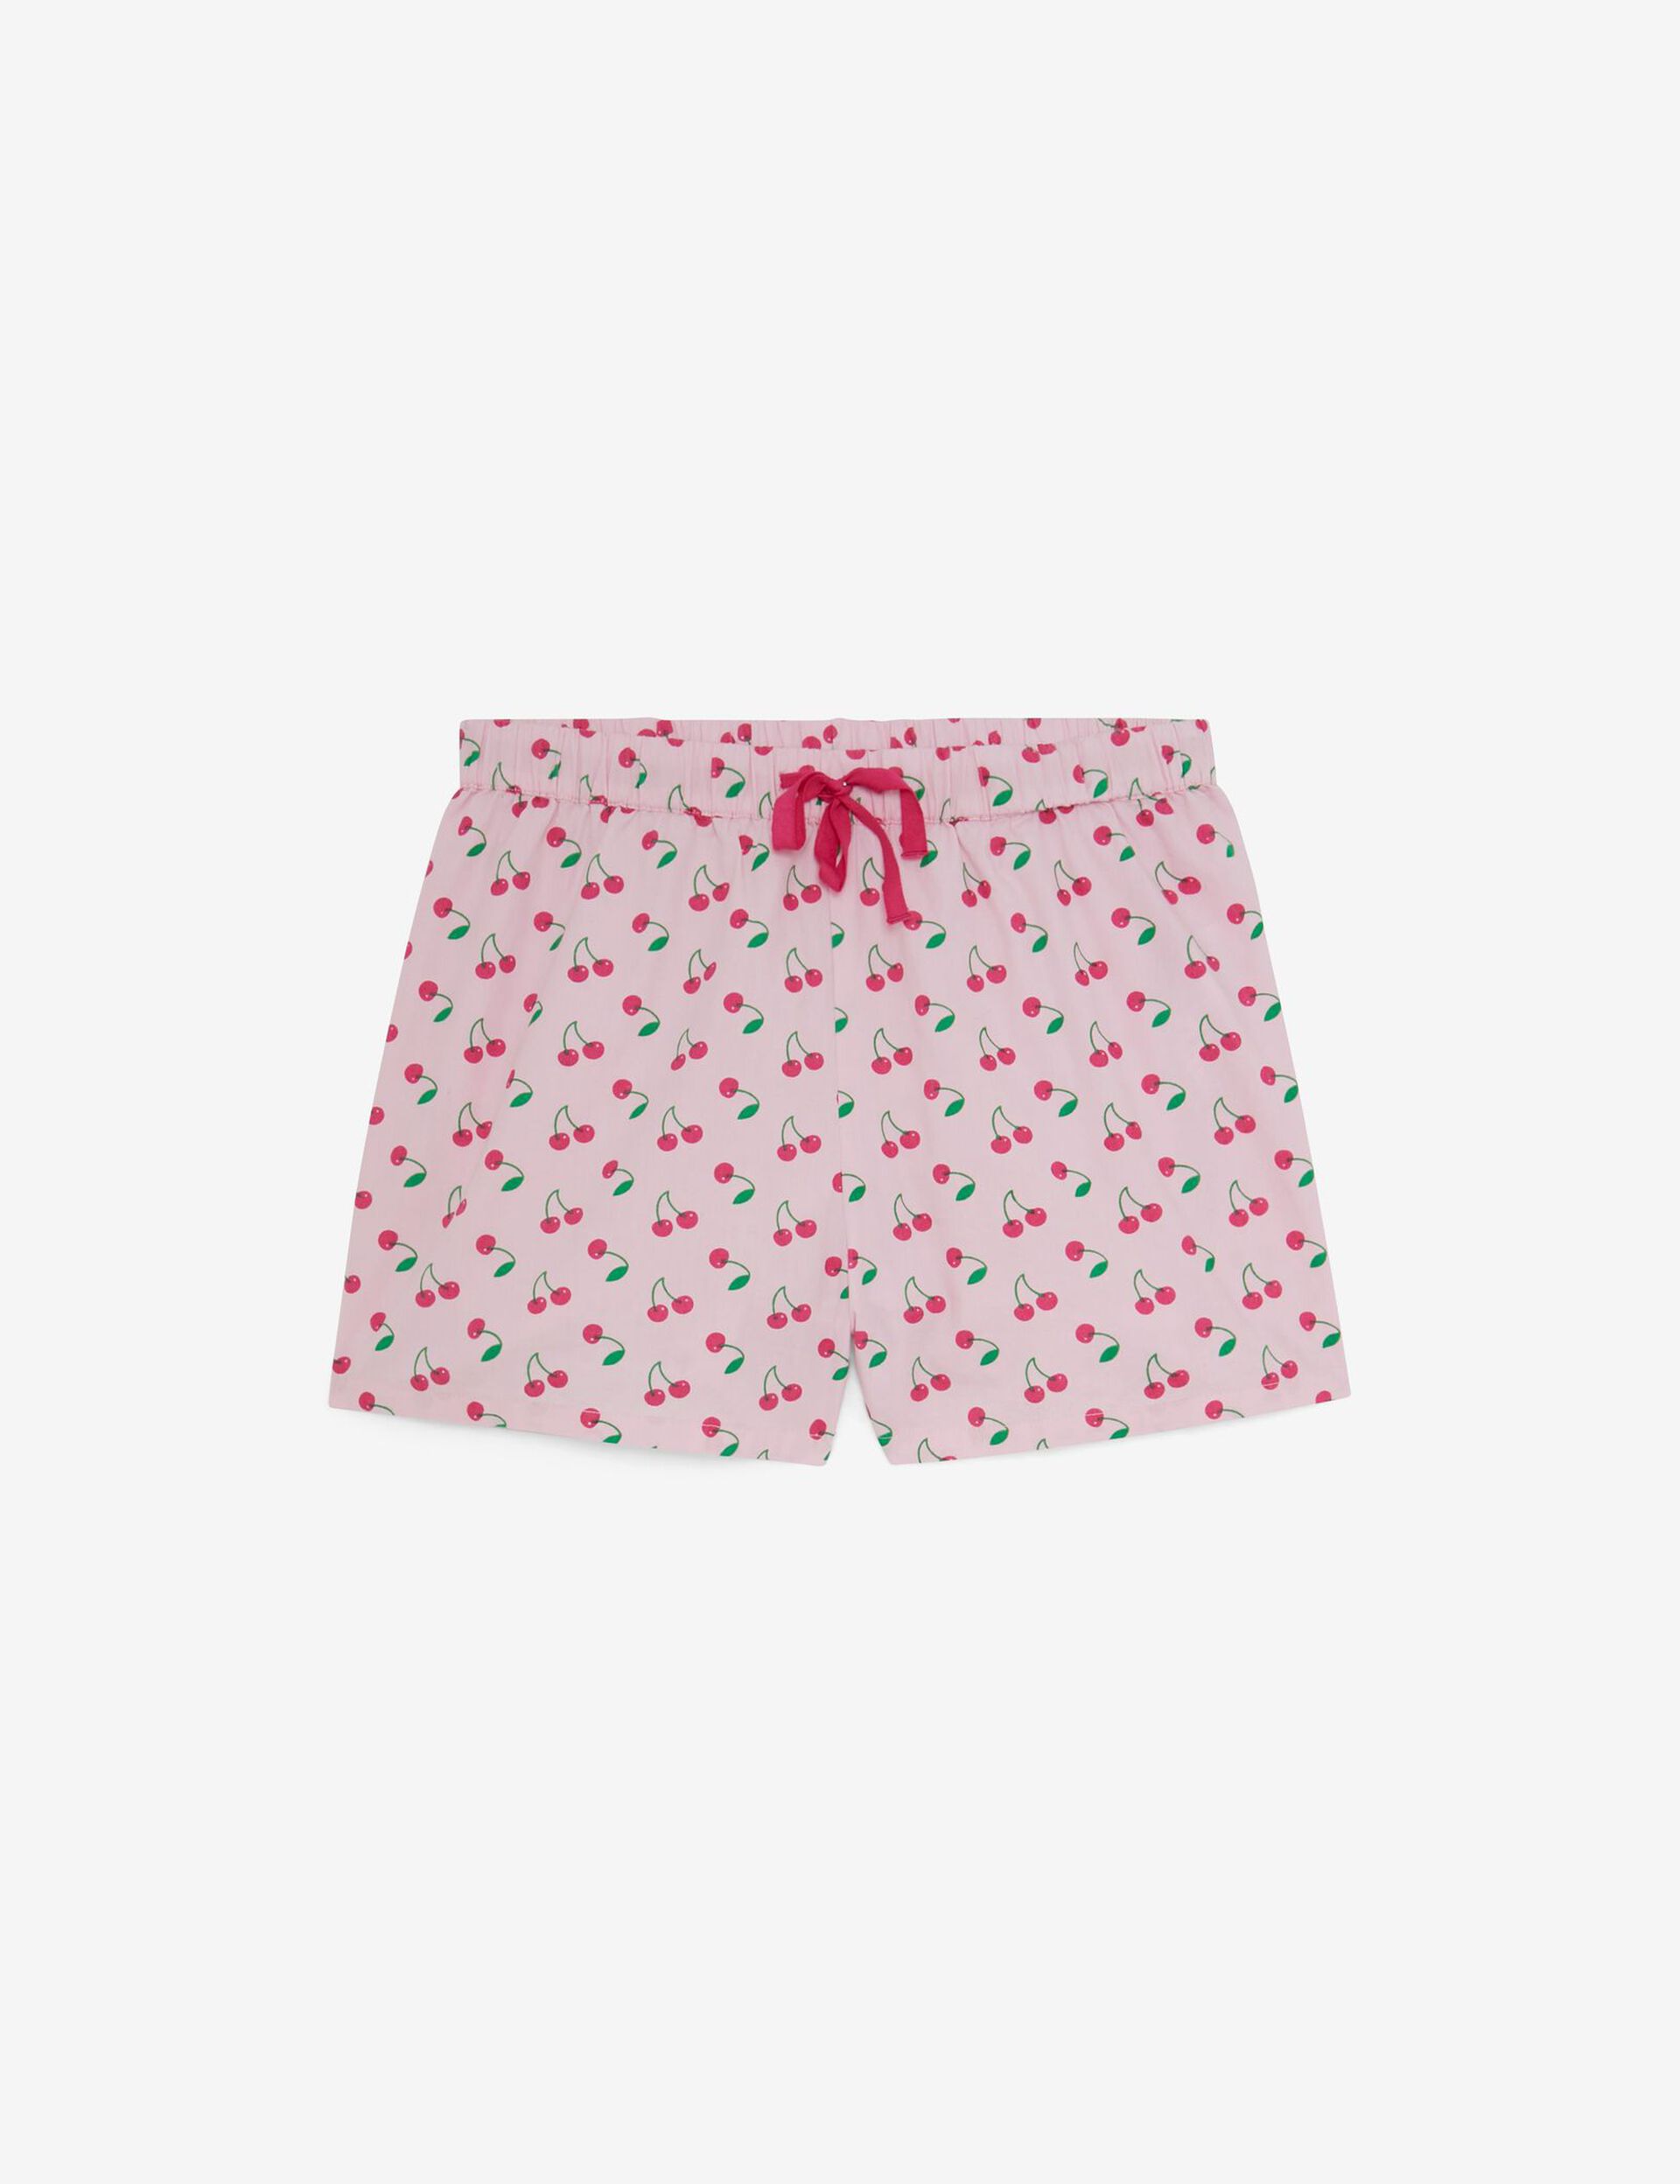 Set pyjama motif cerise rose